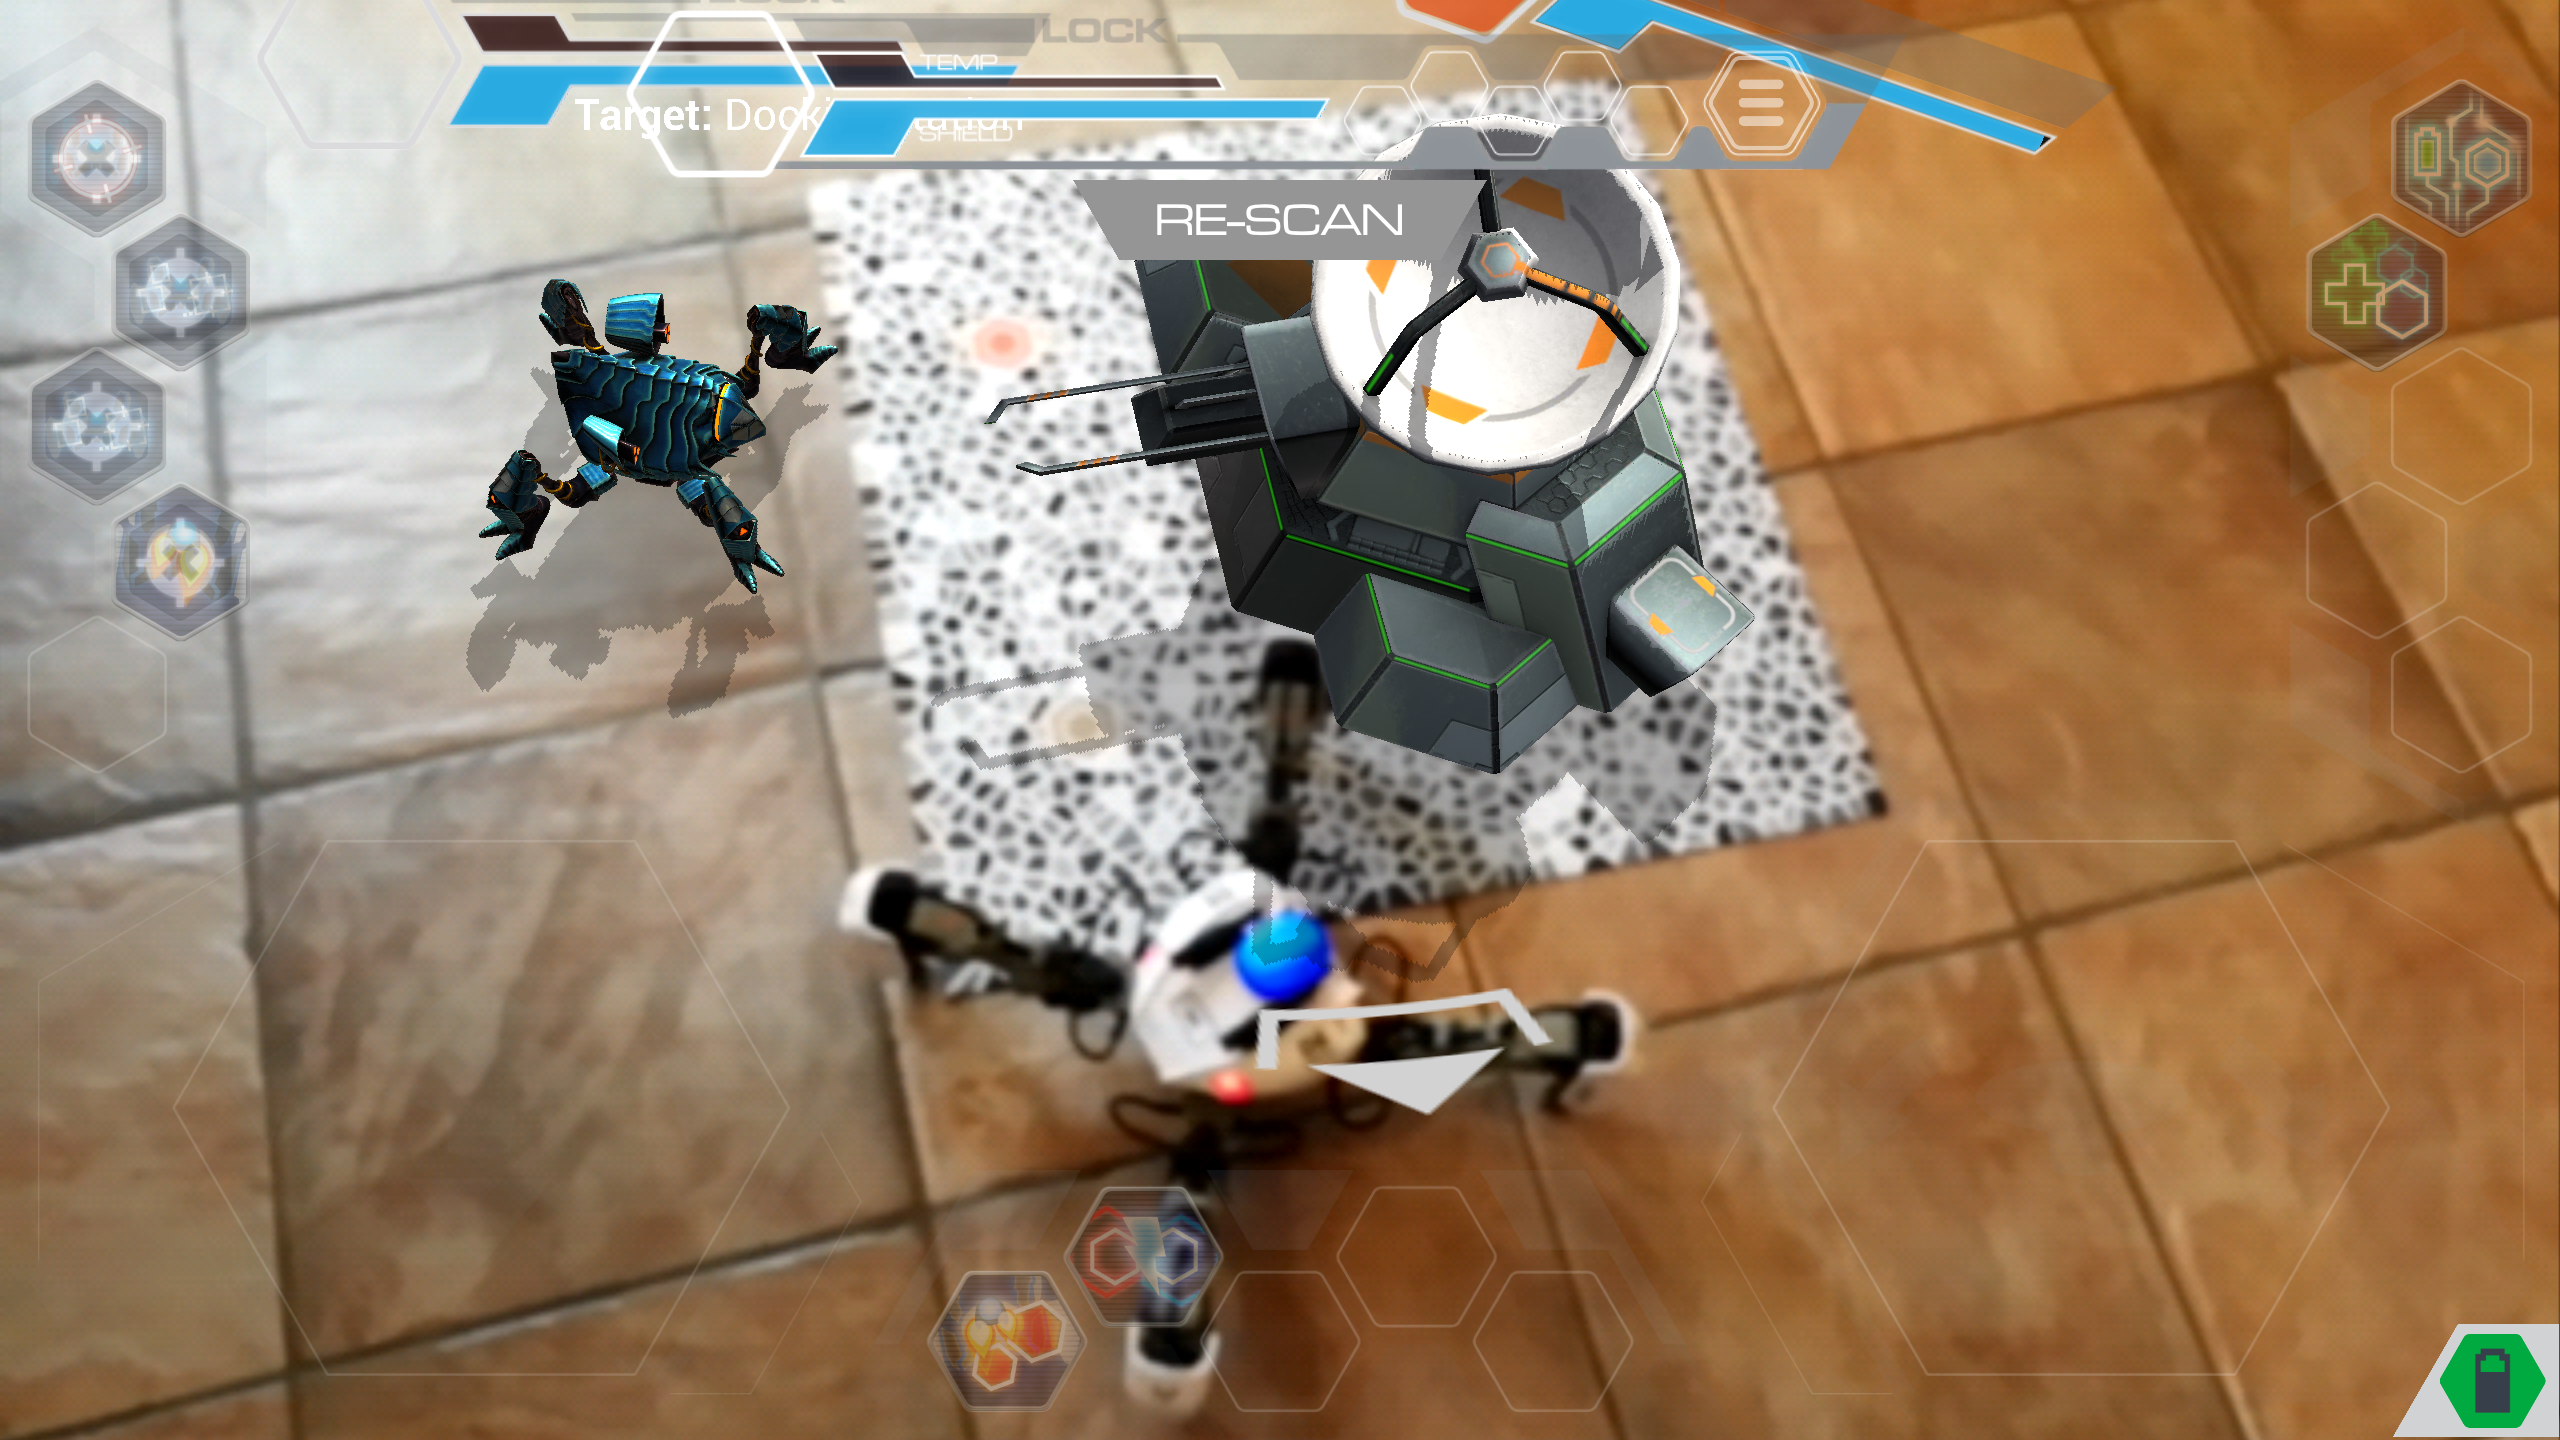 MekaMon robot in augmented reality battle scene.